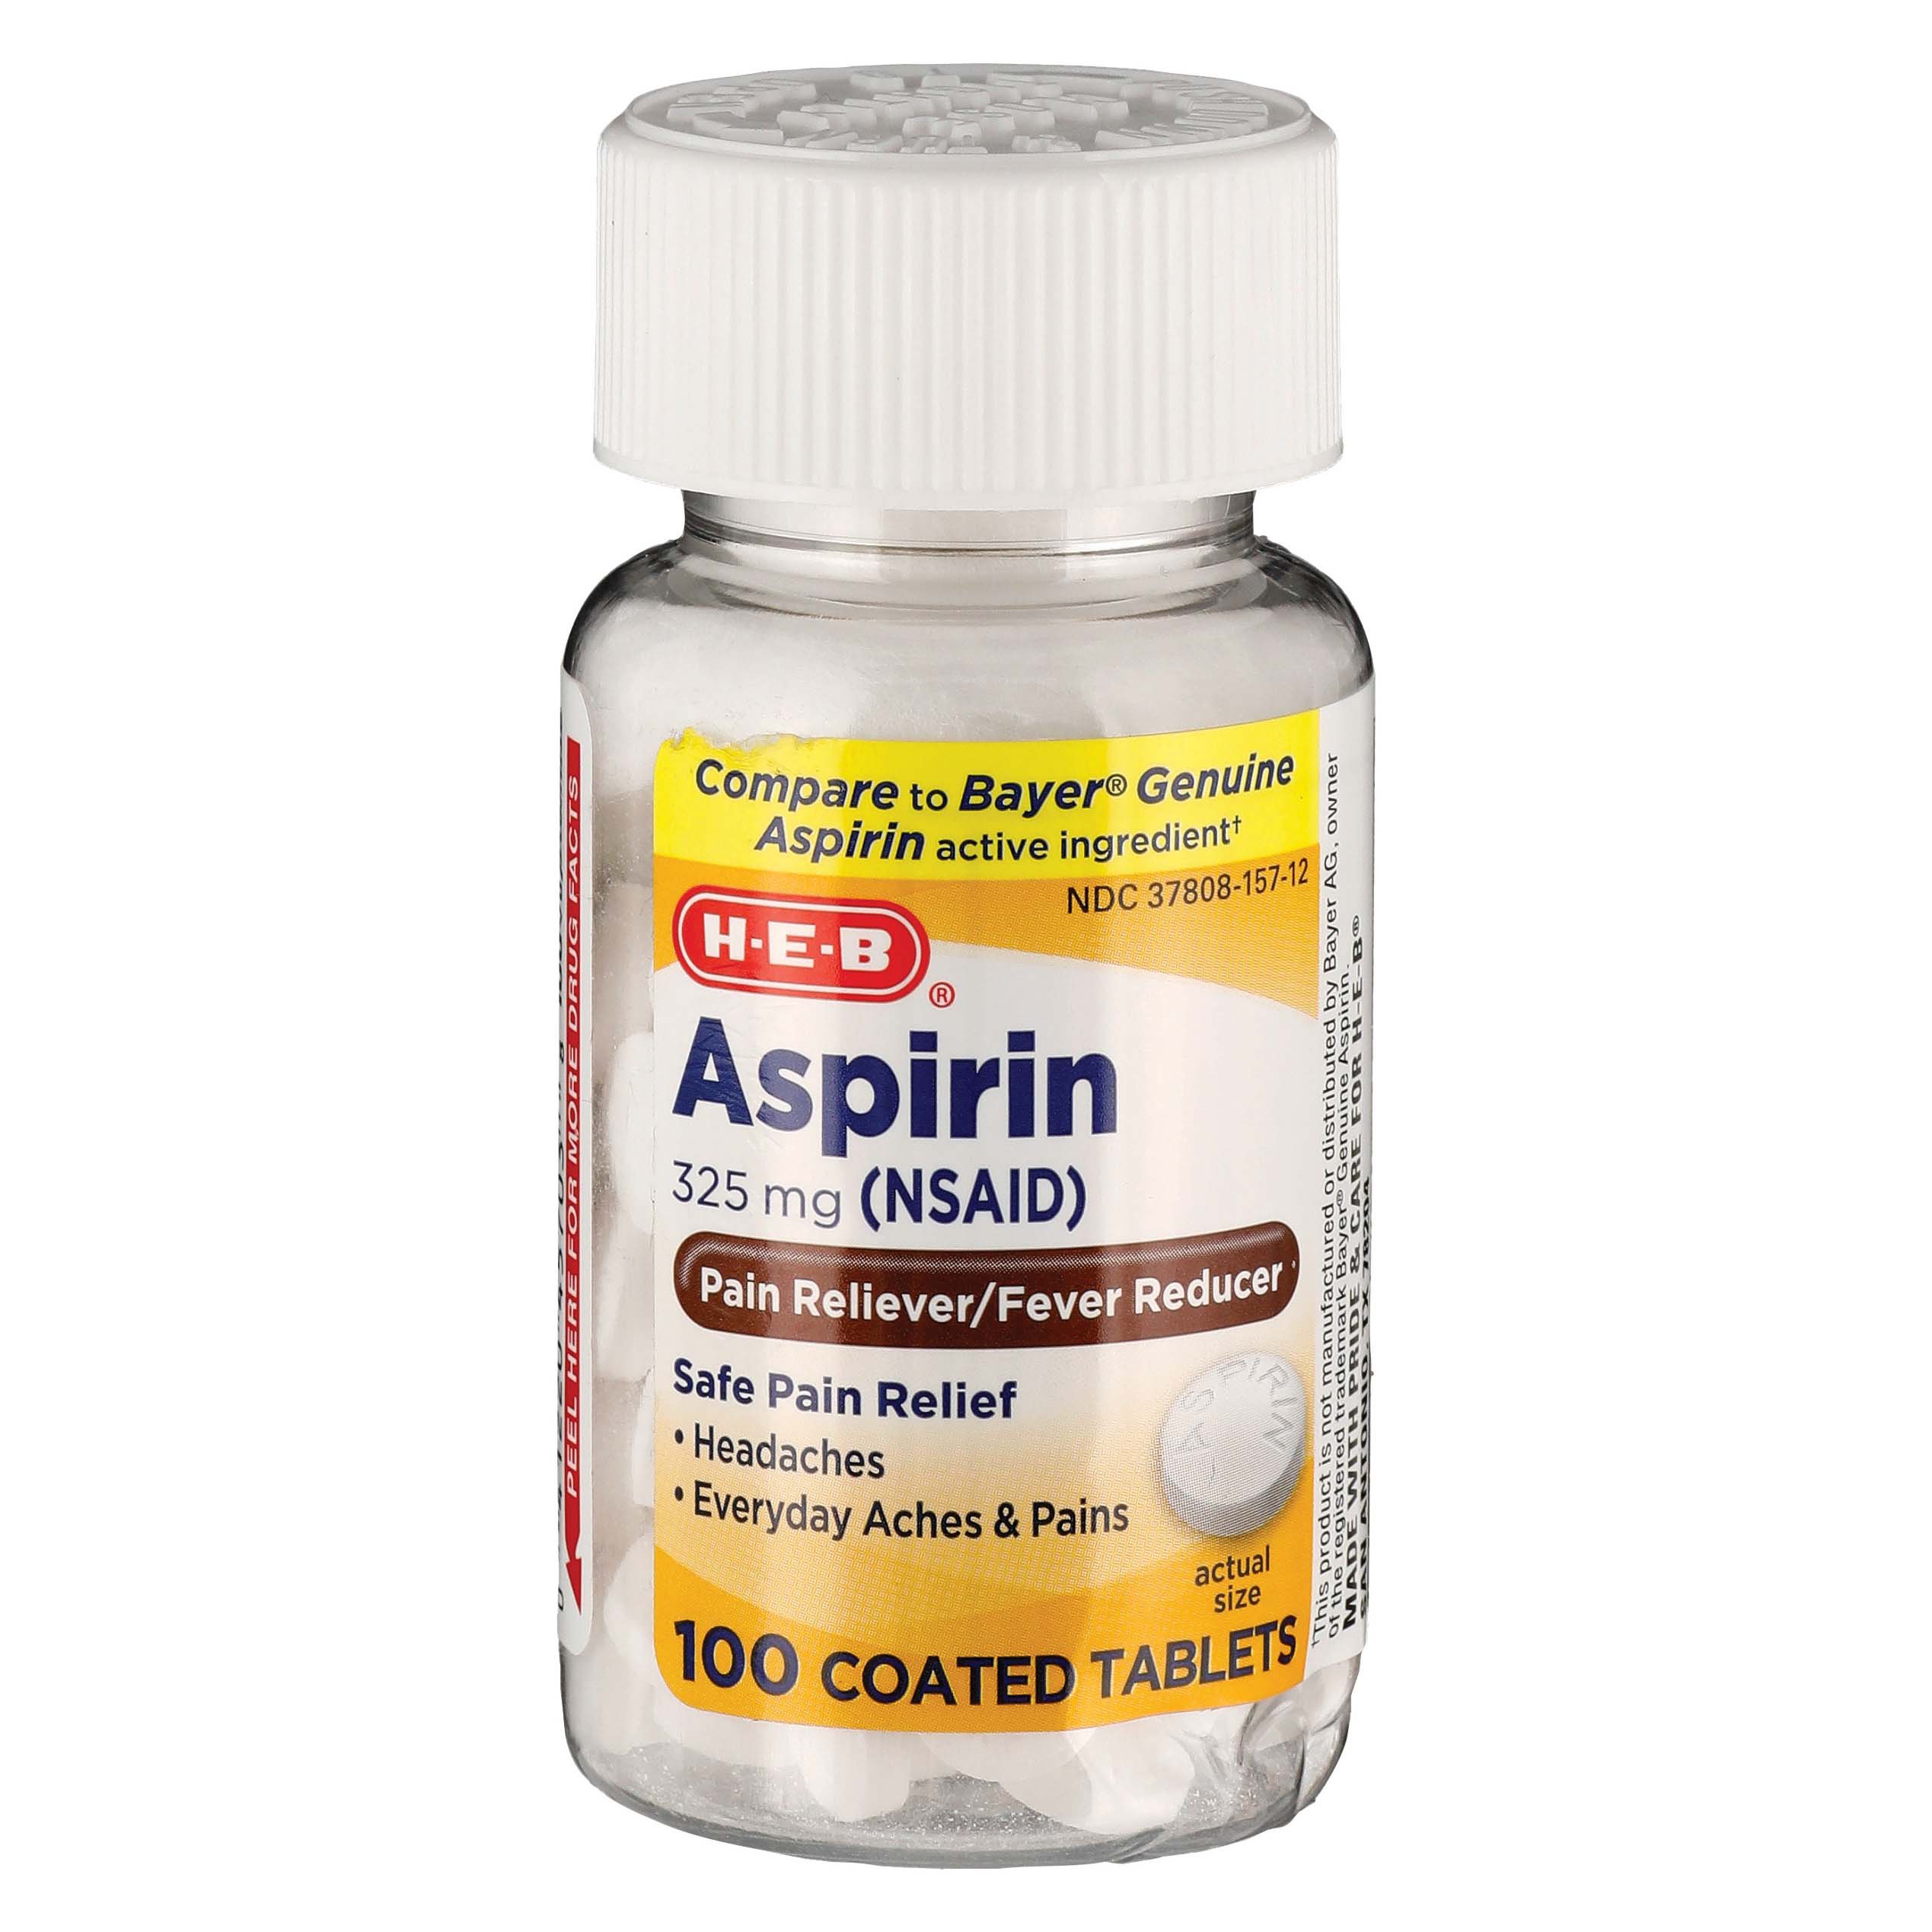 Aspirin THE WONDER